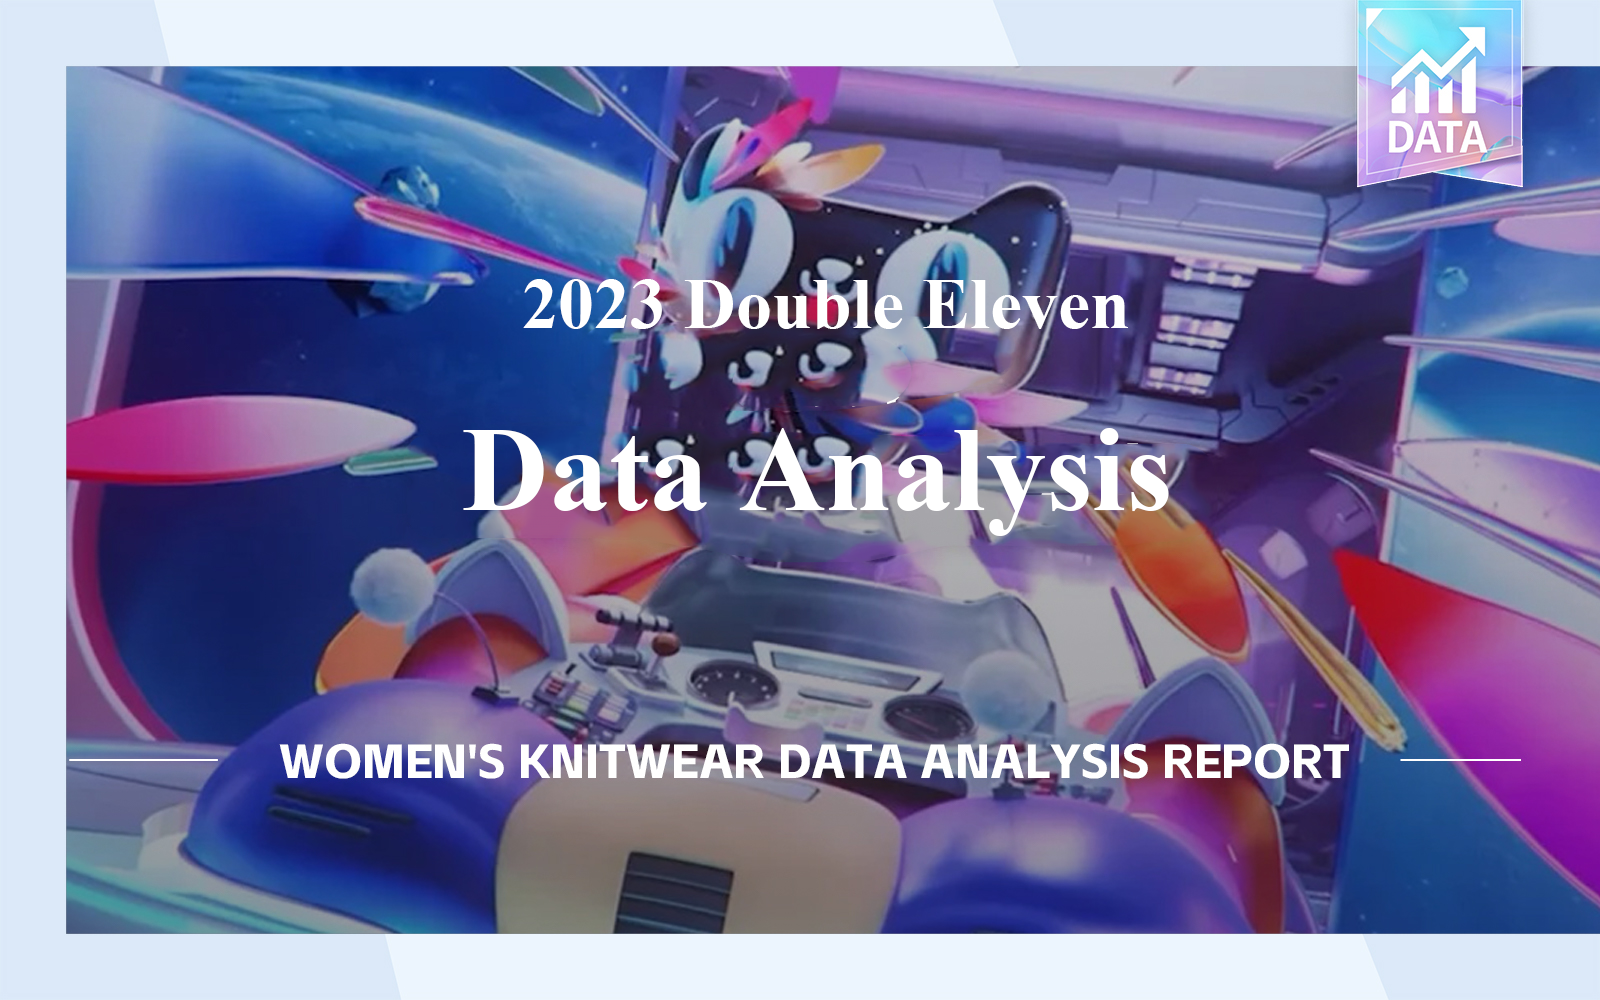 2023 Double Eleven Data Analysis of Women's Knitwear